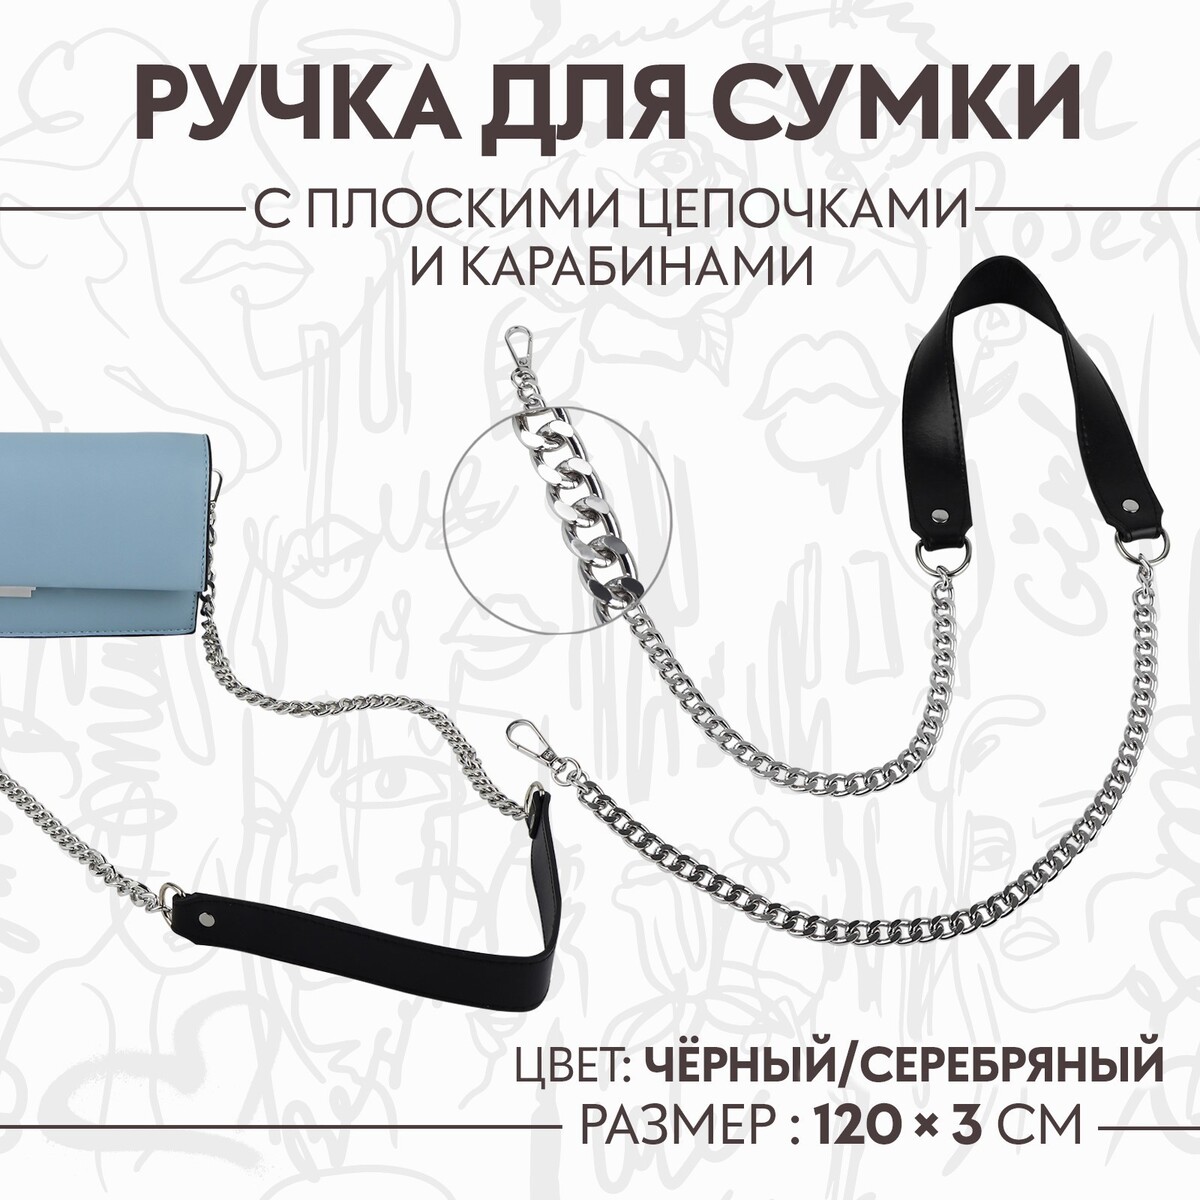 Ручка для сумки, с плоскими цепочками и карабинами, 120 × 3 см, цвет черный/серебряный ручка для сумки с плоскими цепочками и карабинами 120 × 3 см серебряный